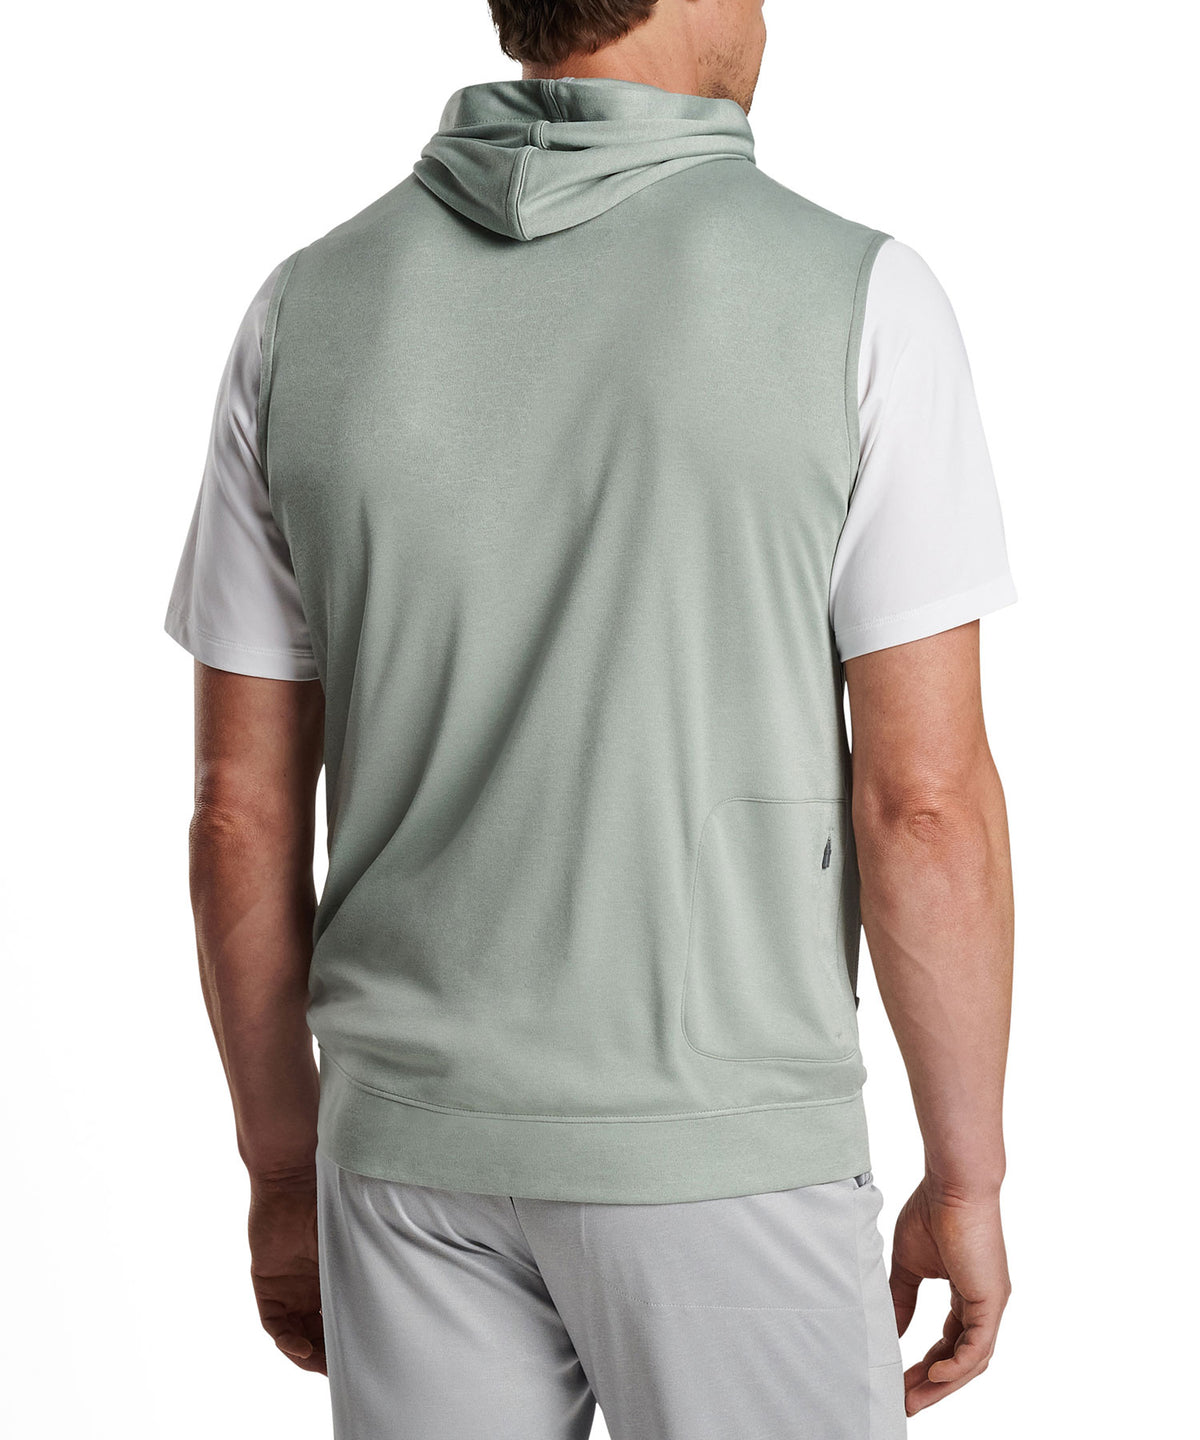 Peter Millar Cloudglow Hoodie Vest, Men's Big & Tall